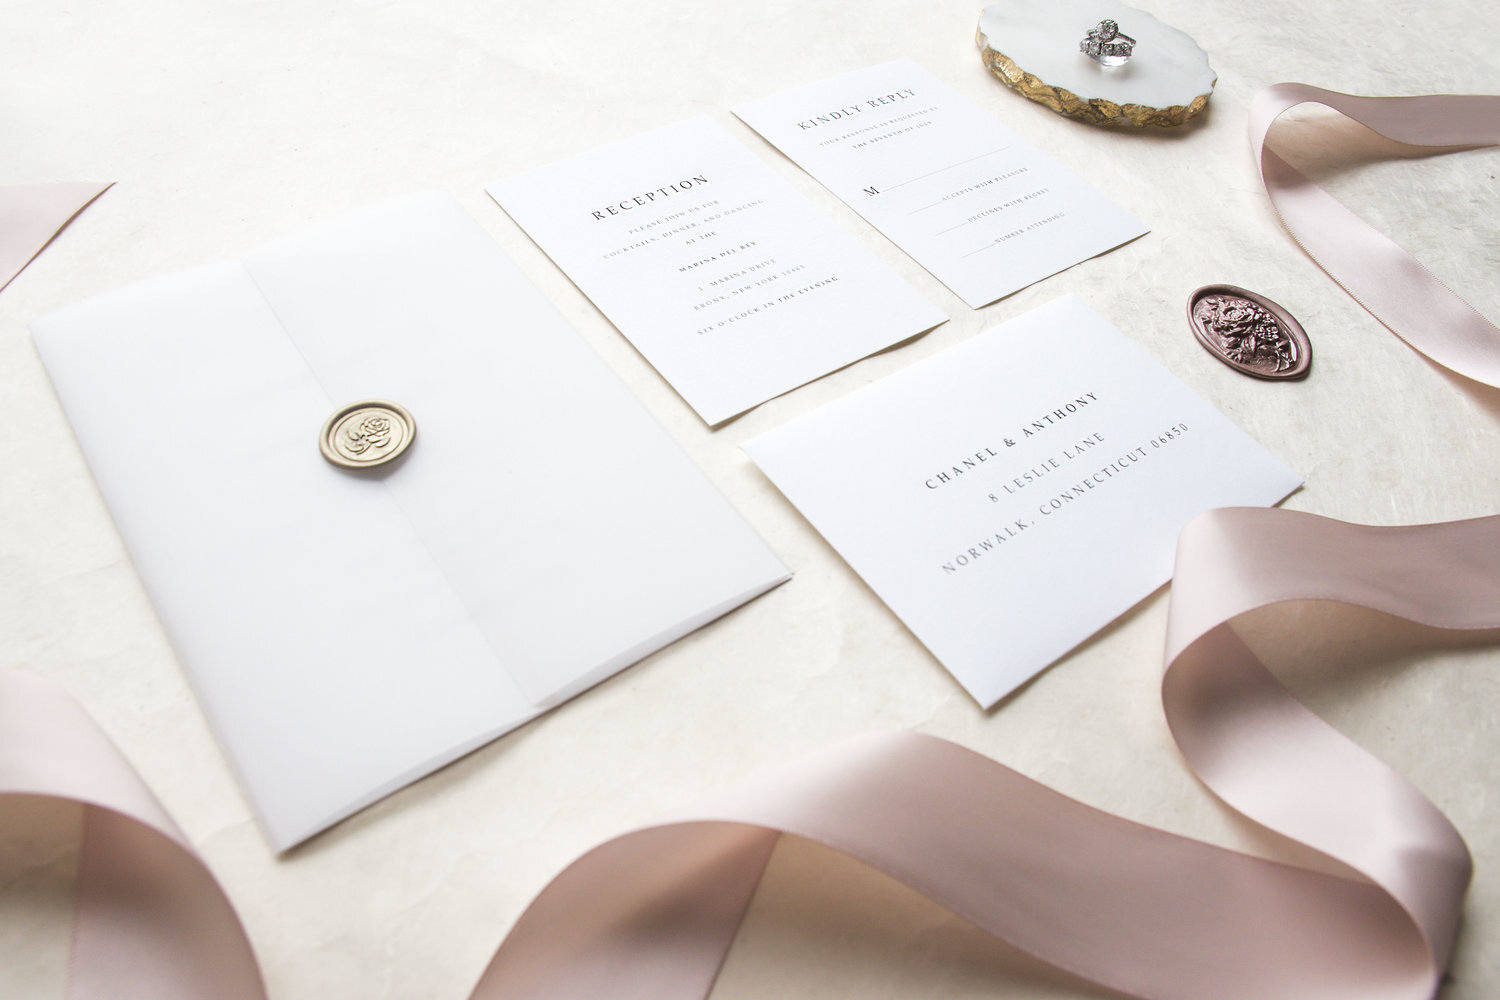 The Chanel Wedding Invitation Design by Creationari Graphic Design Studio  in Fairfield NJ — CREATIONARI - Custom Wedding Invitation Company in  Fairfield NJ 07004 - CALL 201-417-3898